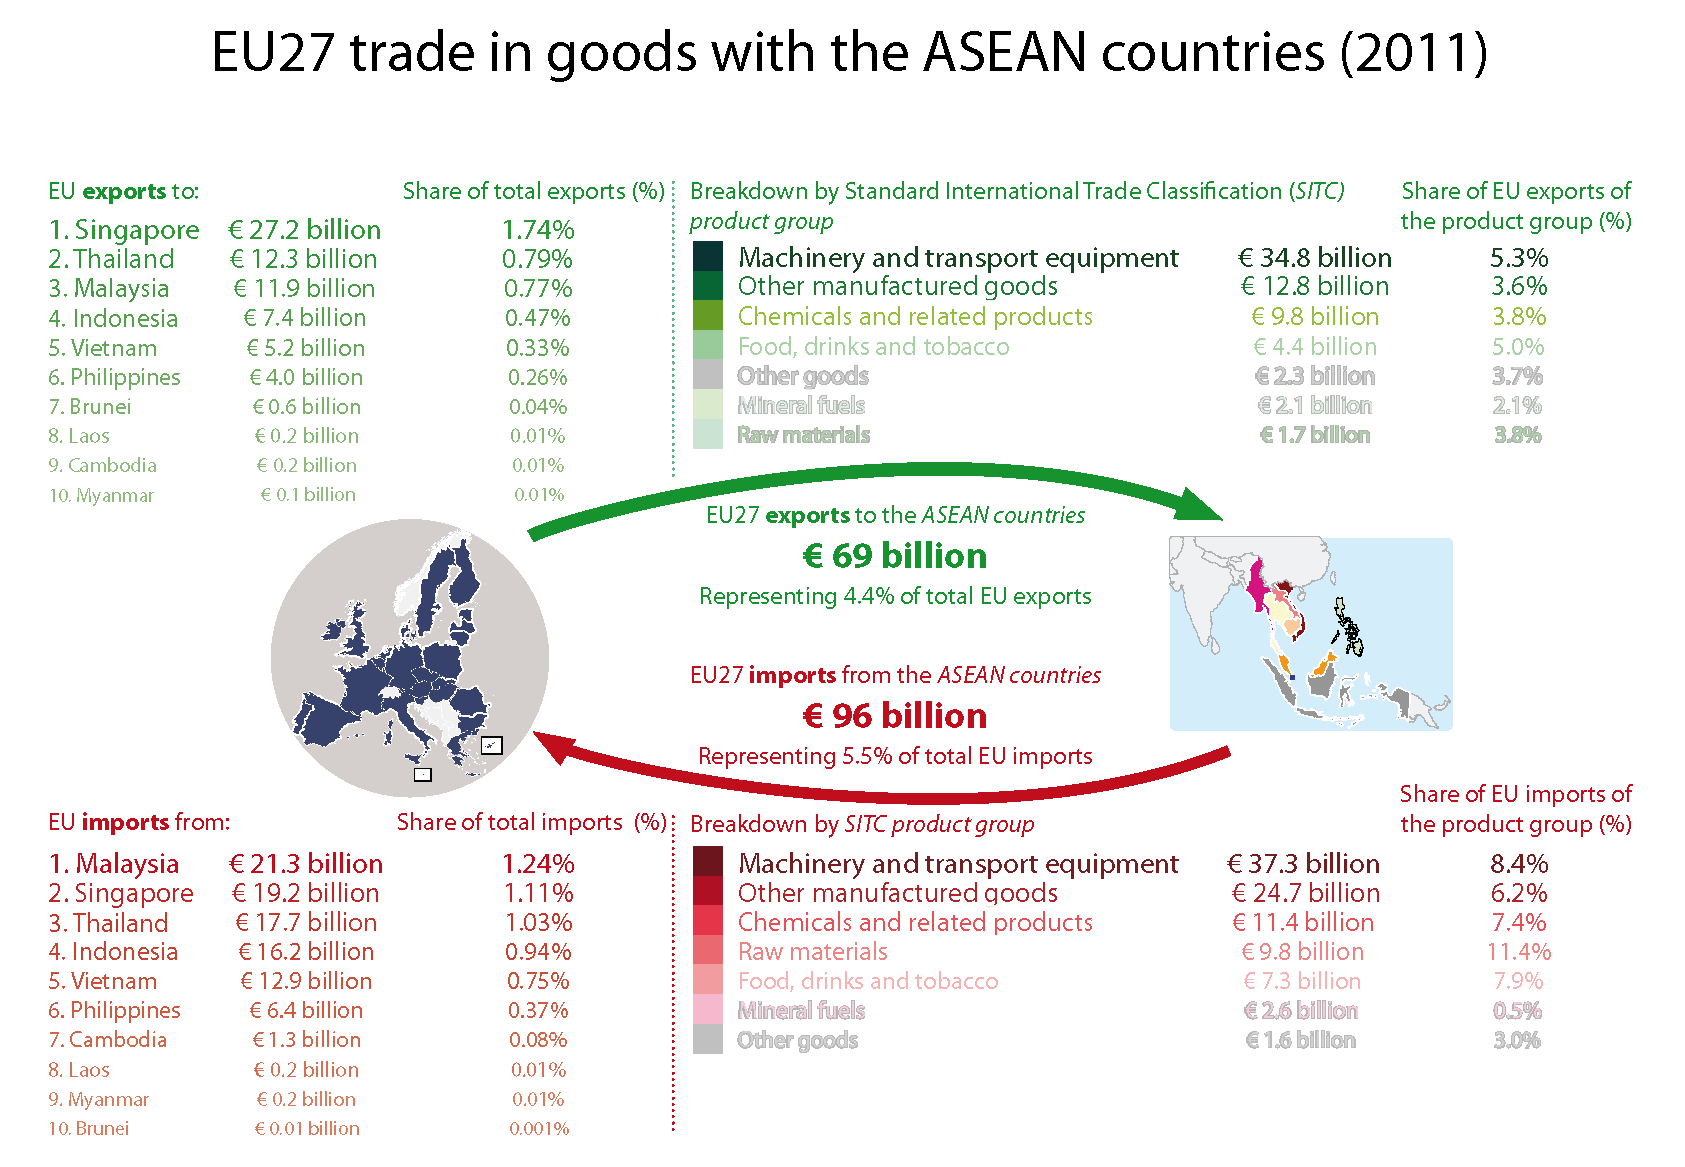 EU-ASEAN trade relations